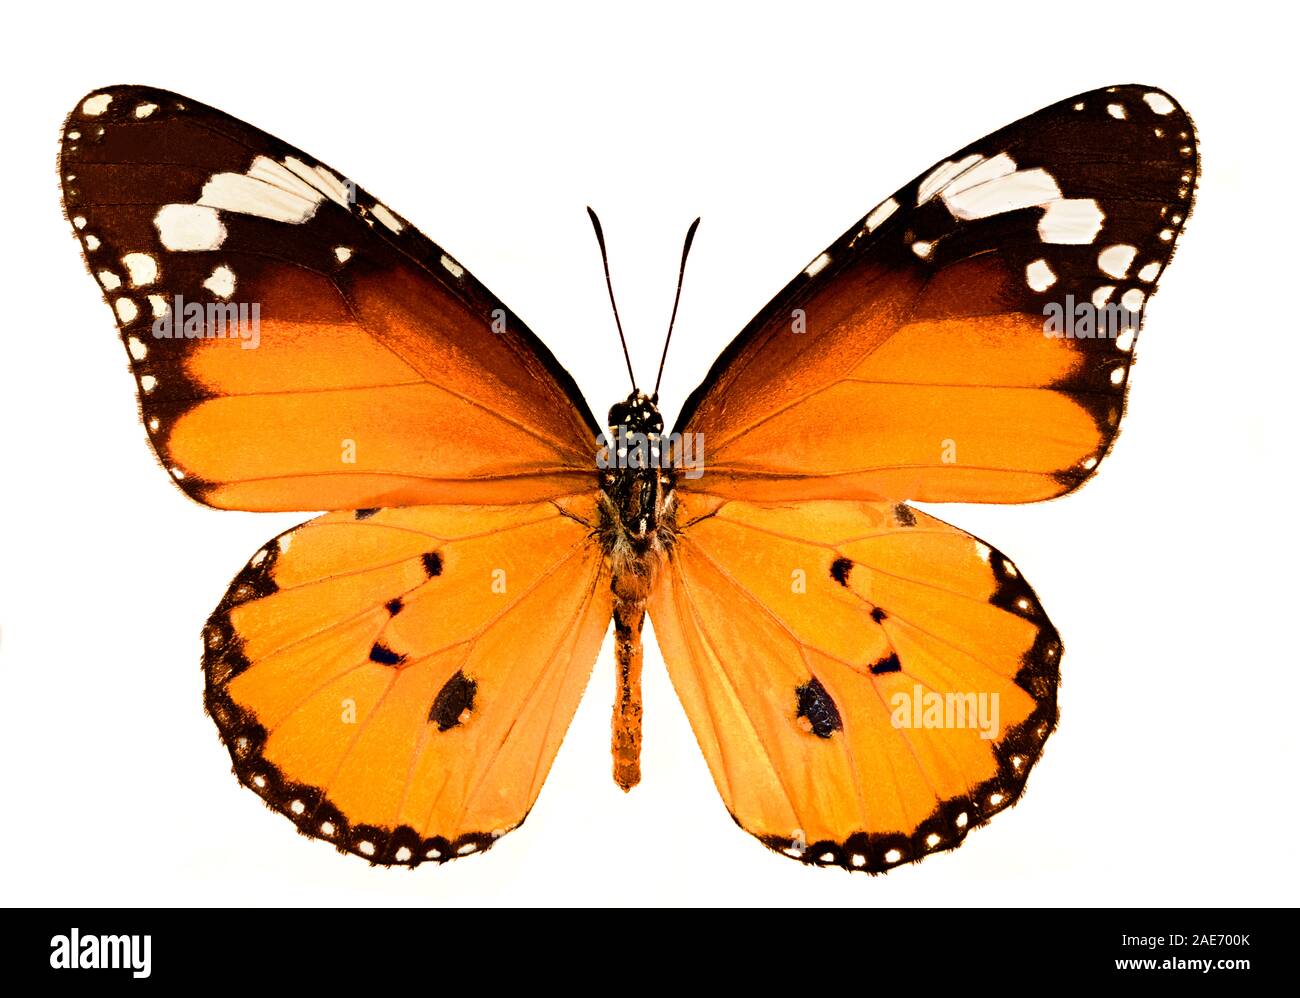 Schneiden Sie das Bild des schlichten Tigerschmetterlings, des Schmetterlings der afrikanischen Königin oder des Schmetterlings des afrikanischen Monarchen Danaus Chrysippus aus Stockfoto